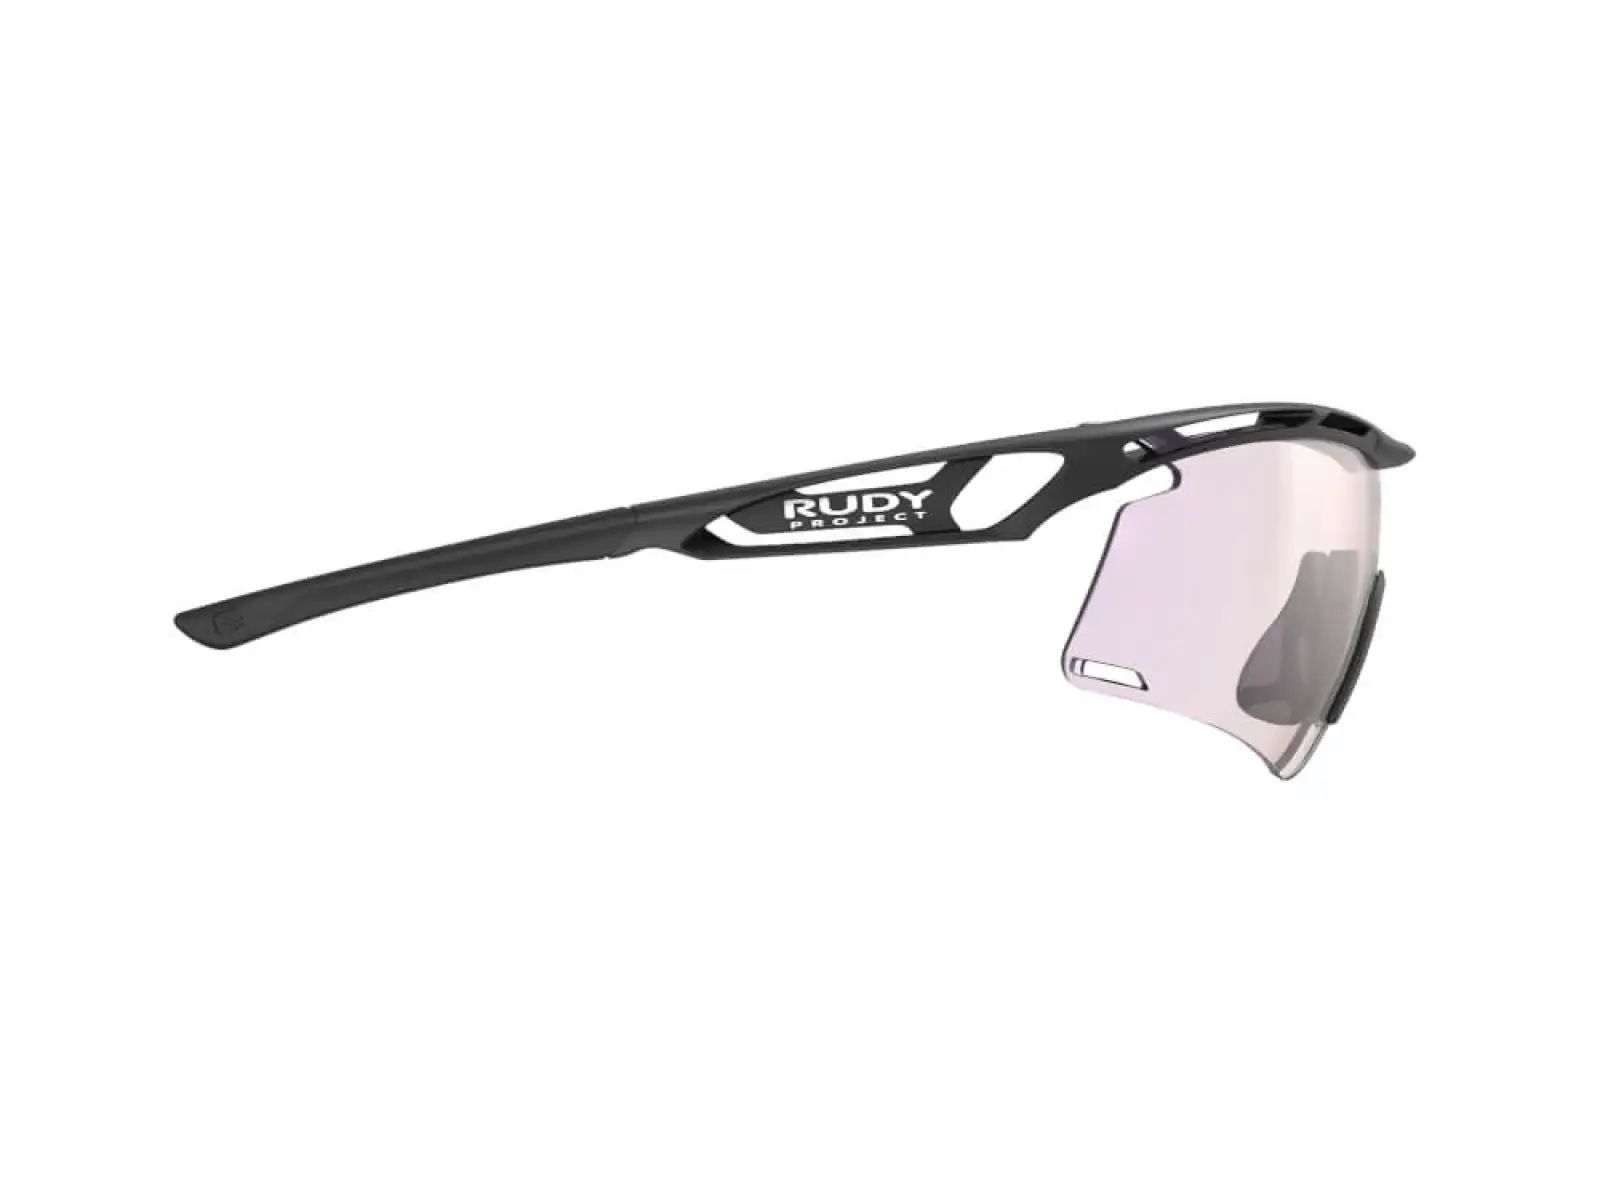 Rudy Project Tralyx+ sportovní brýle Black Matte